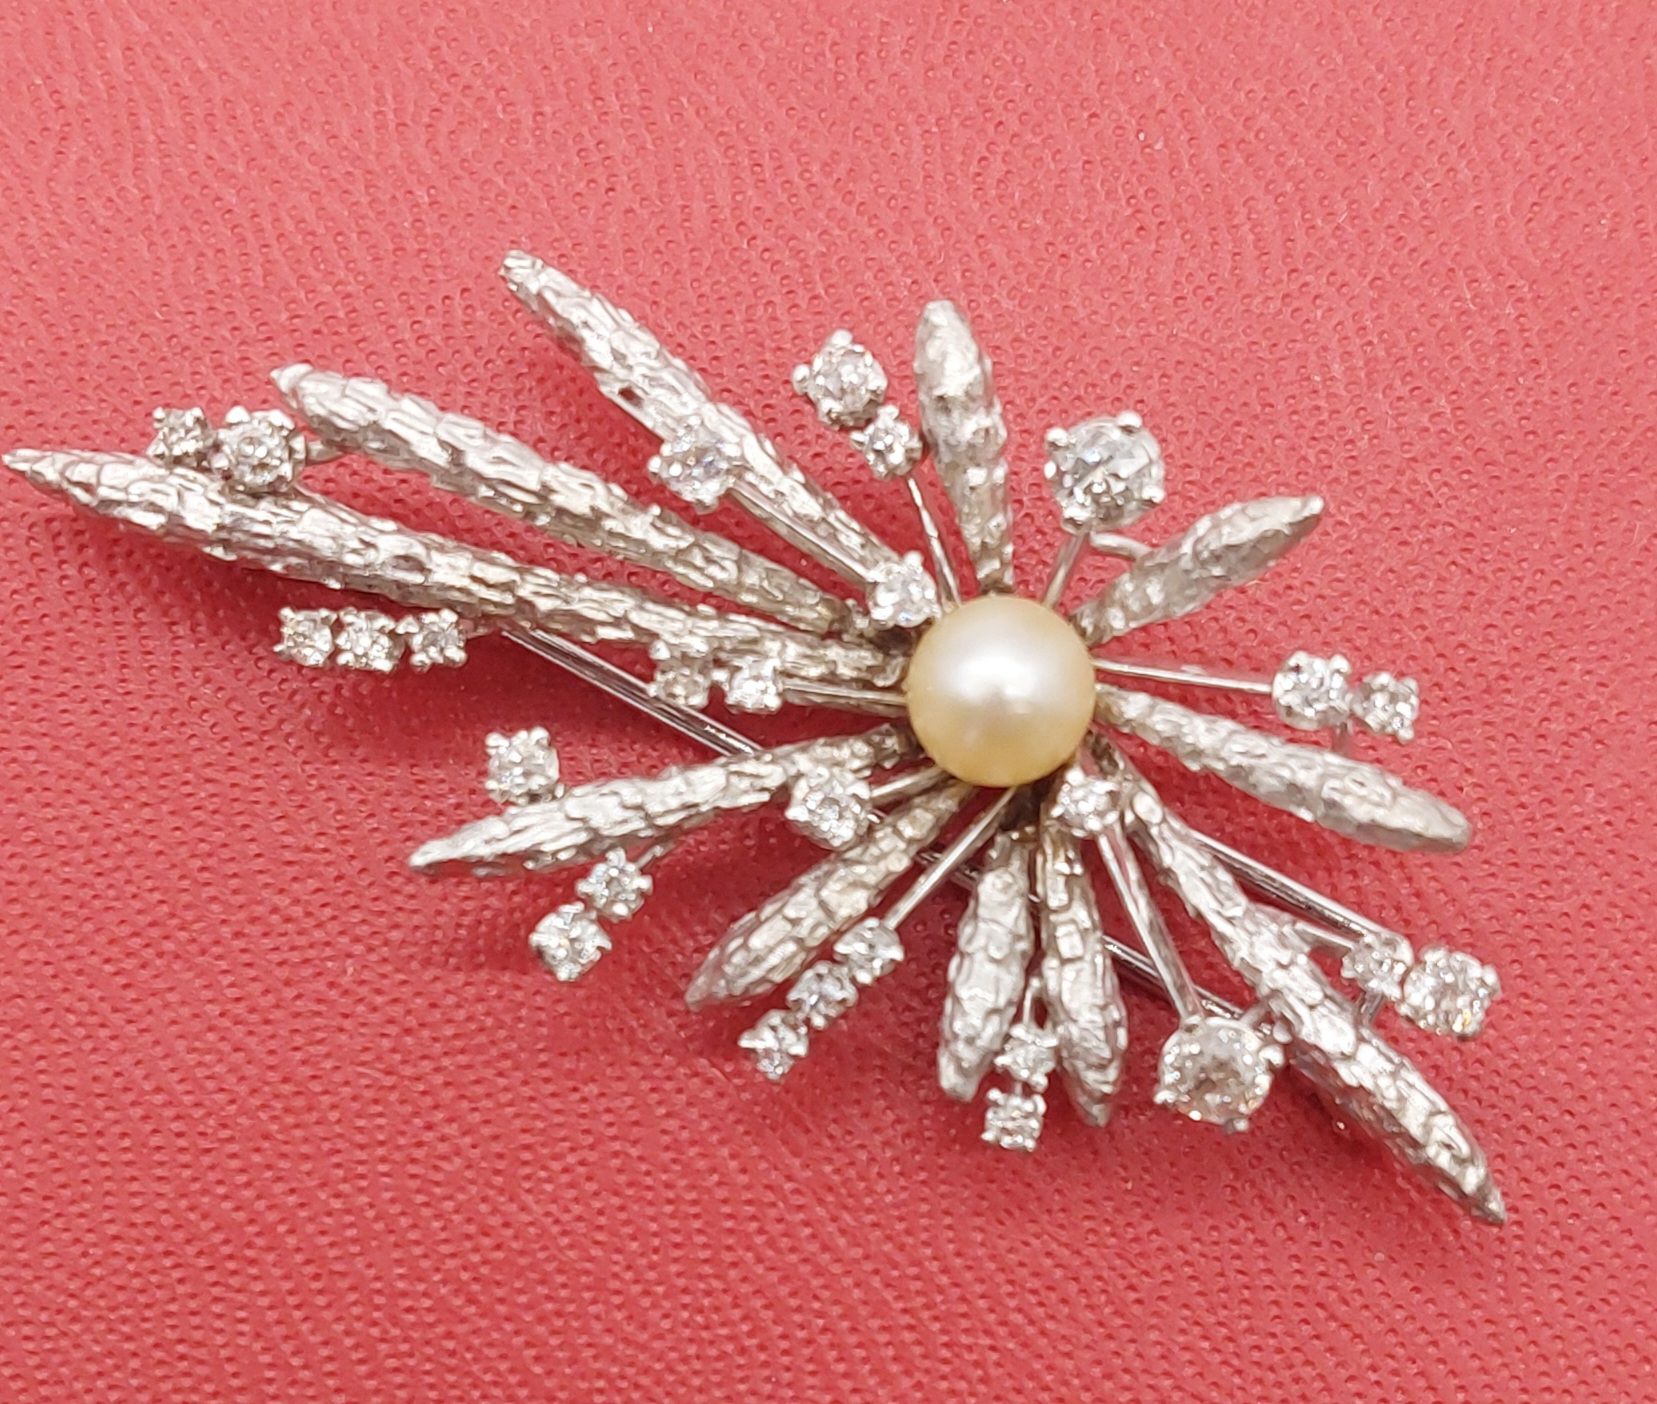 Null BROCHE en or blanc et diamants ornée d'une perle

PB : 13,70 g